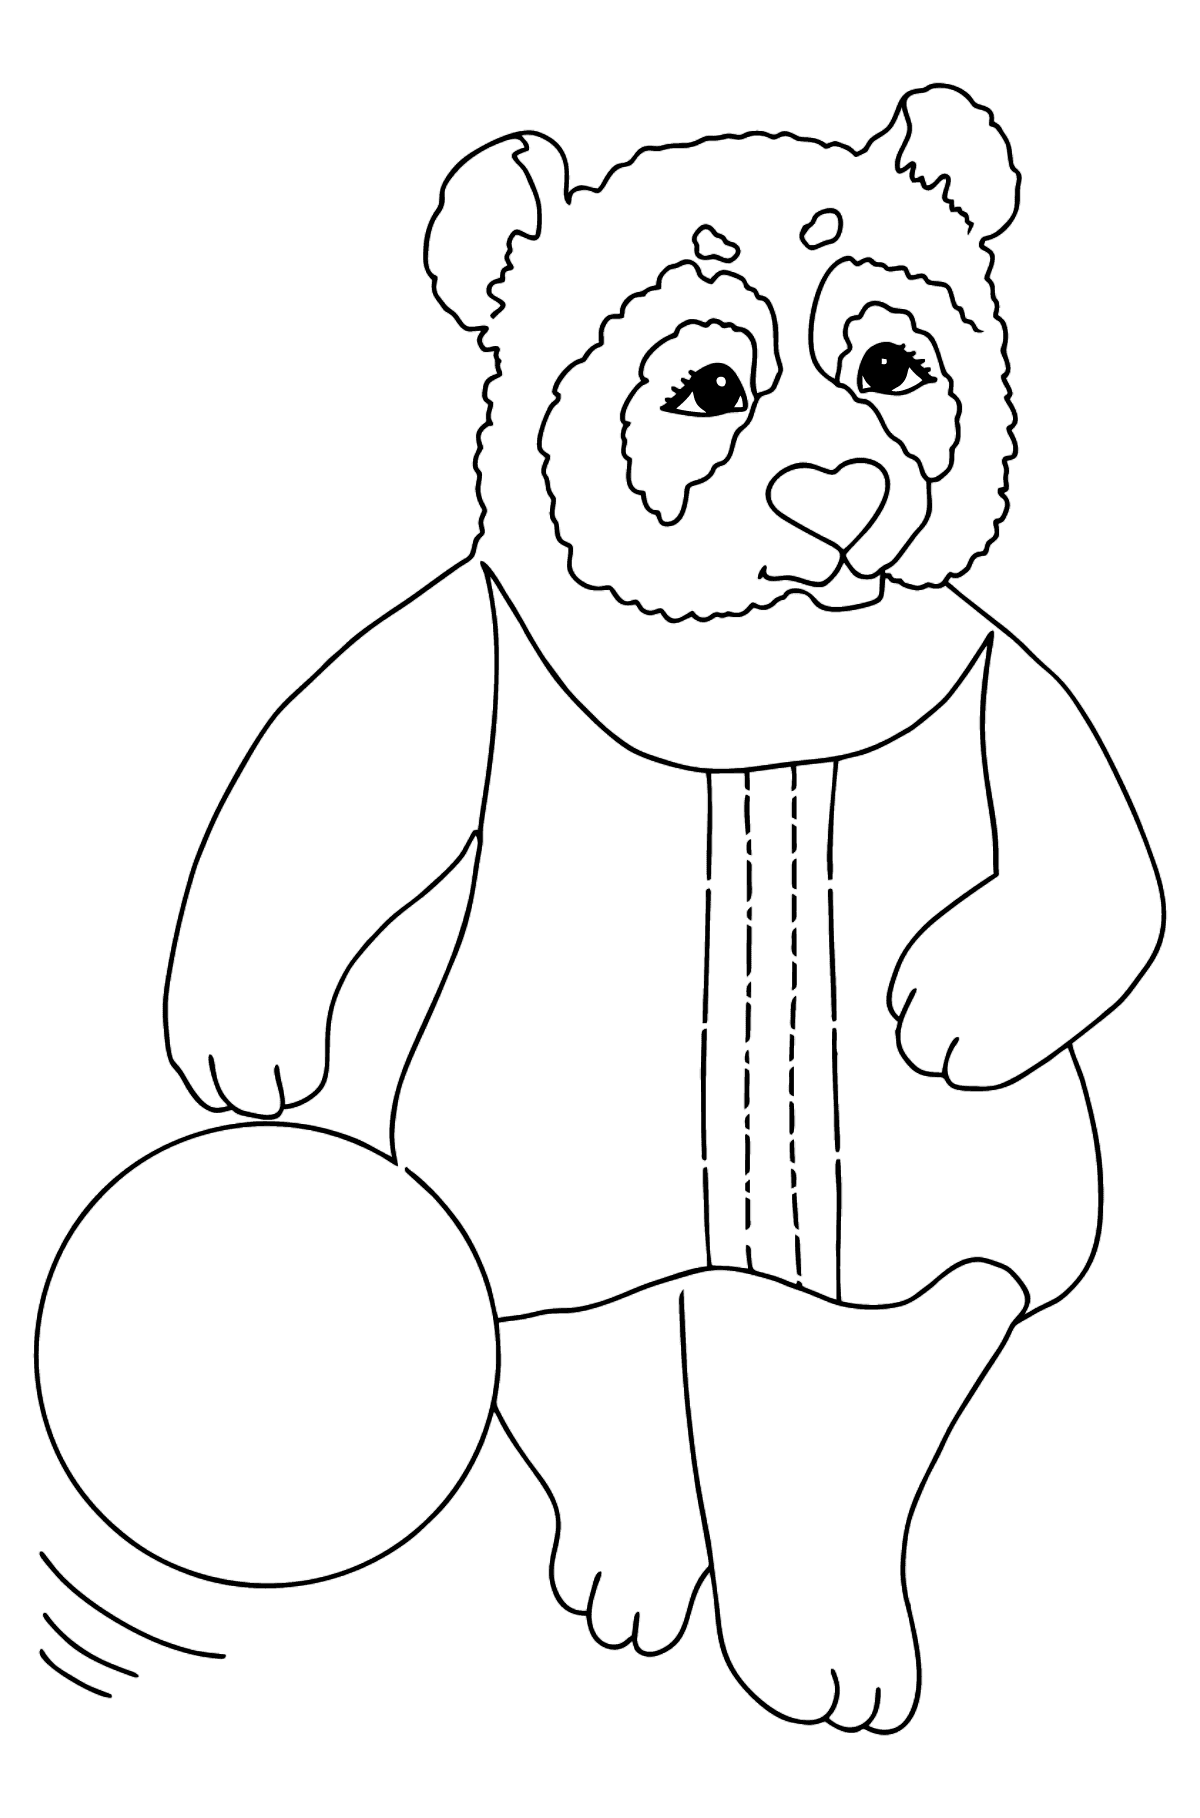 Розмальовка Панда для малюків (просто) - Розмальовки для дітей